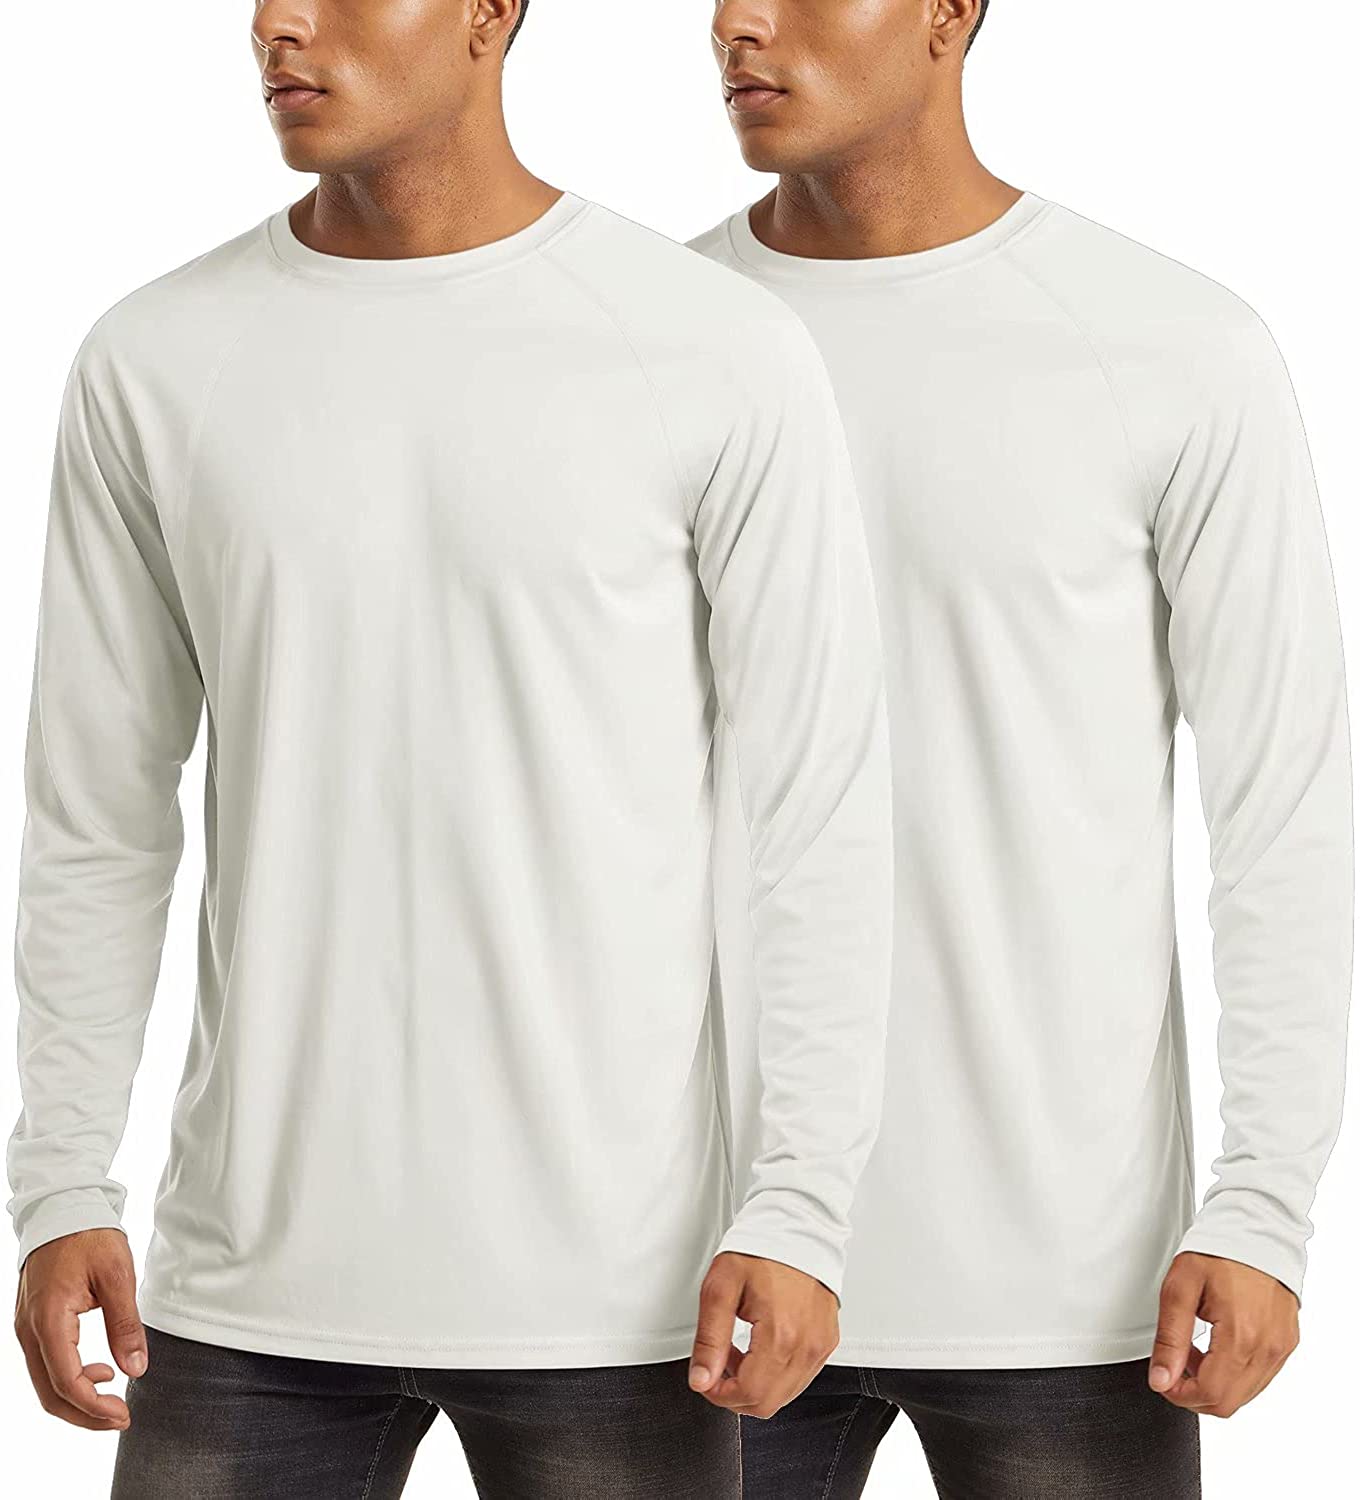 MAGCOMSEN Men's Sun Protection T-Shirt UPF 50 UV Long Sleeve Moisture Wicking Performance Athletic Shirt 